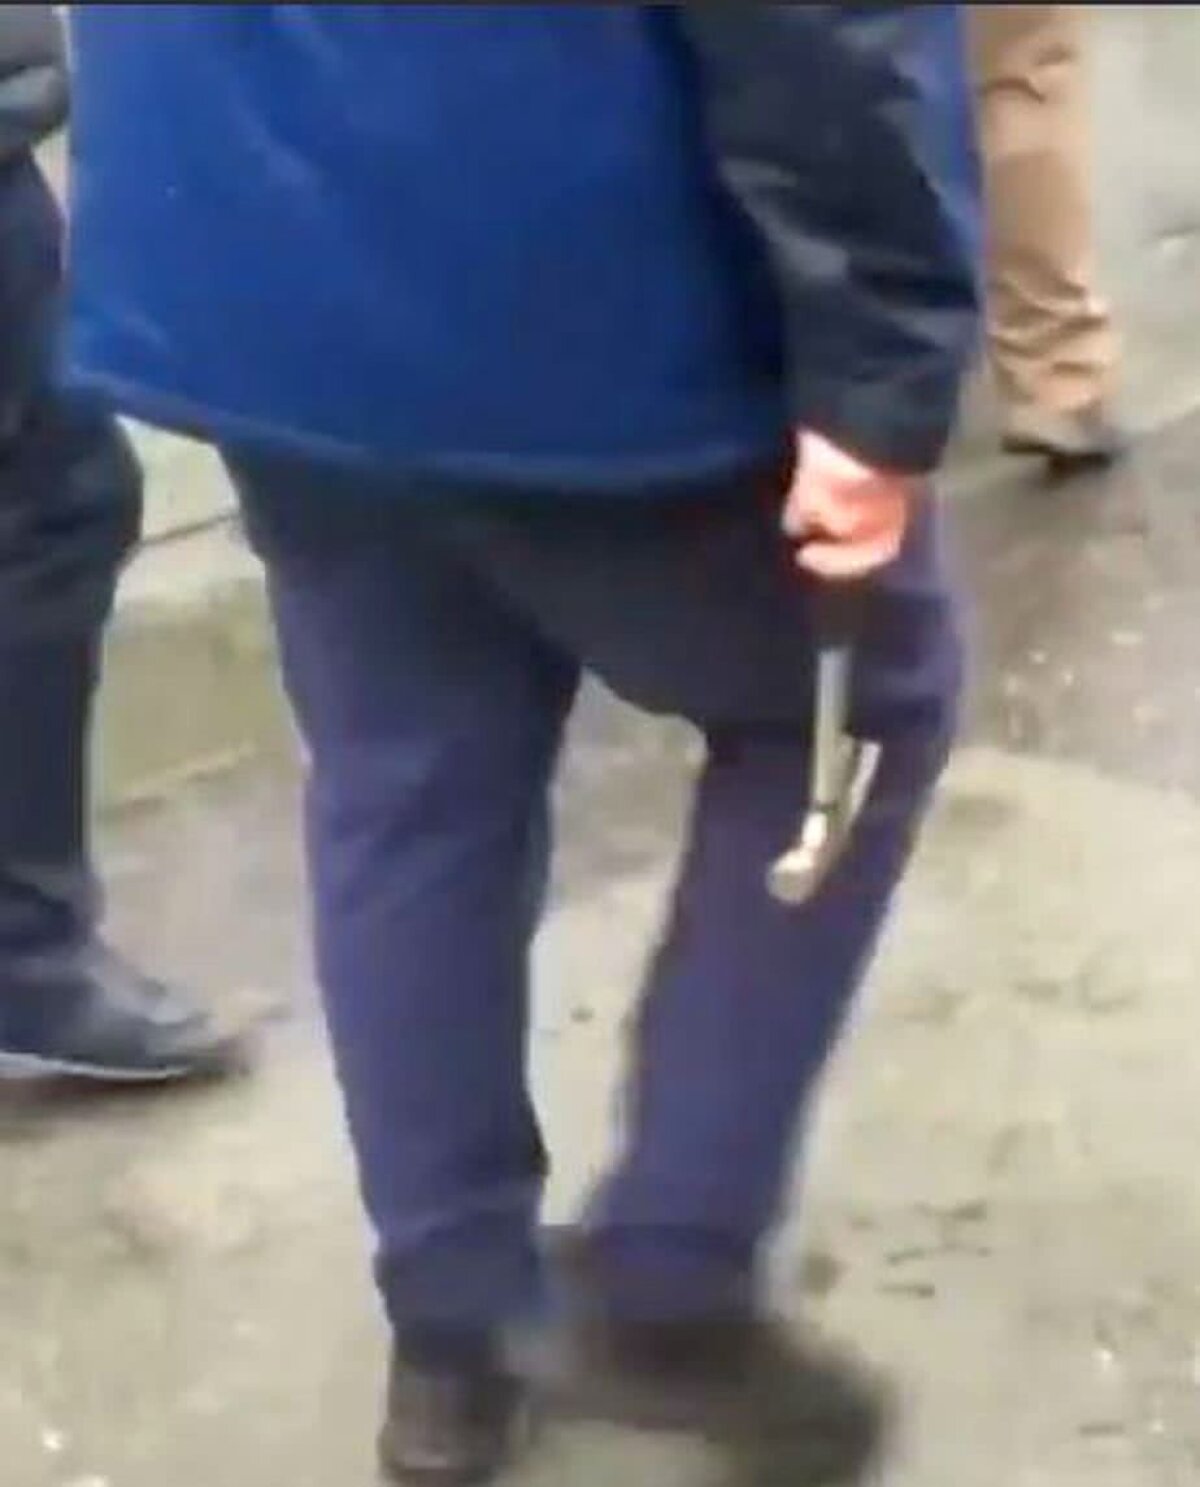 LIVERPOOL - AS ROMA 5-2 // VIDEO + FOTO Violențe extreme la Liverpool » Un fan e în stare critică! Au atacat cu bastoane, ciocane și curele